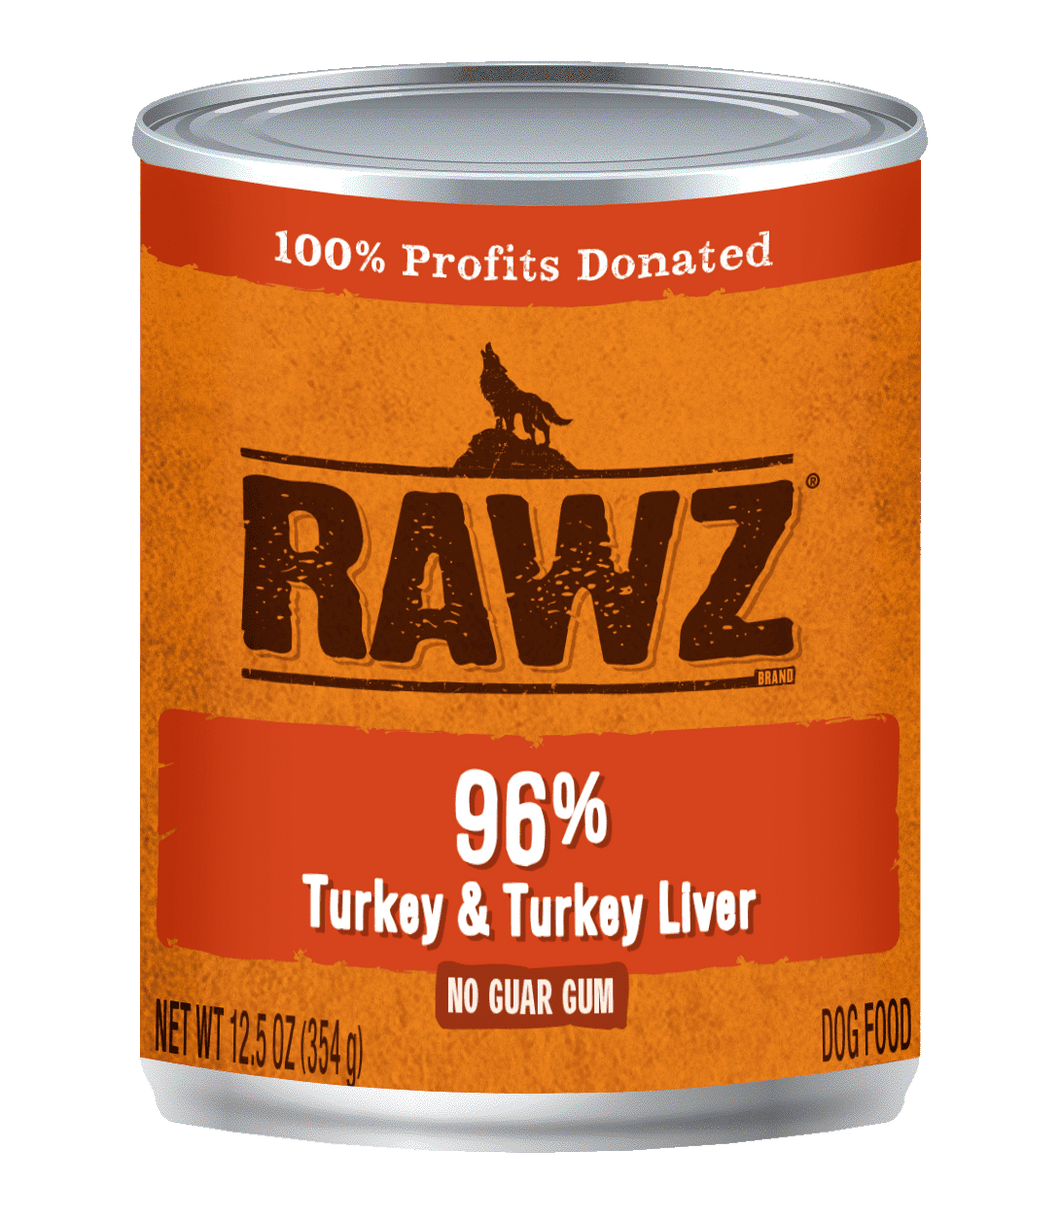 RAWZ 96% Turkey & Turkey Liver Pâté Canned Dog Food